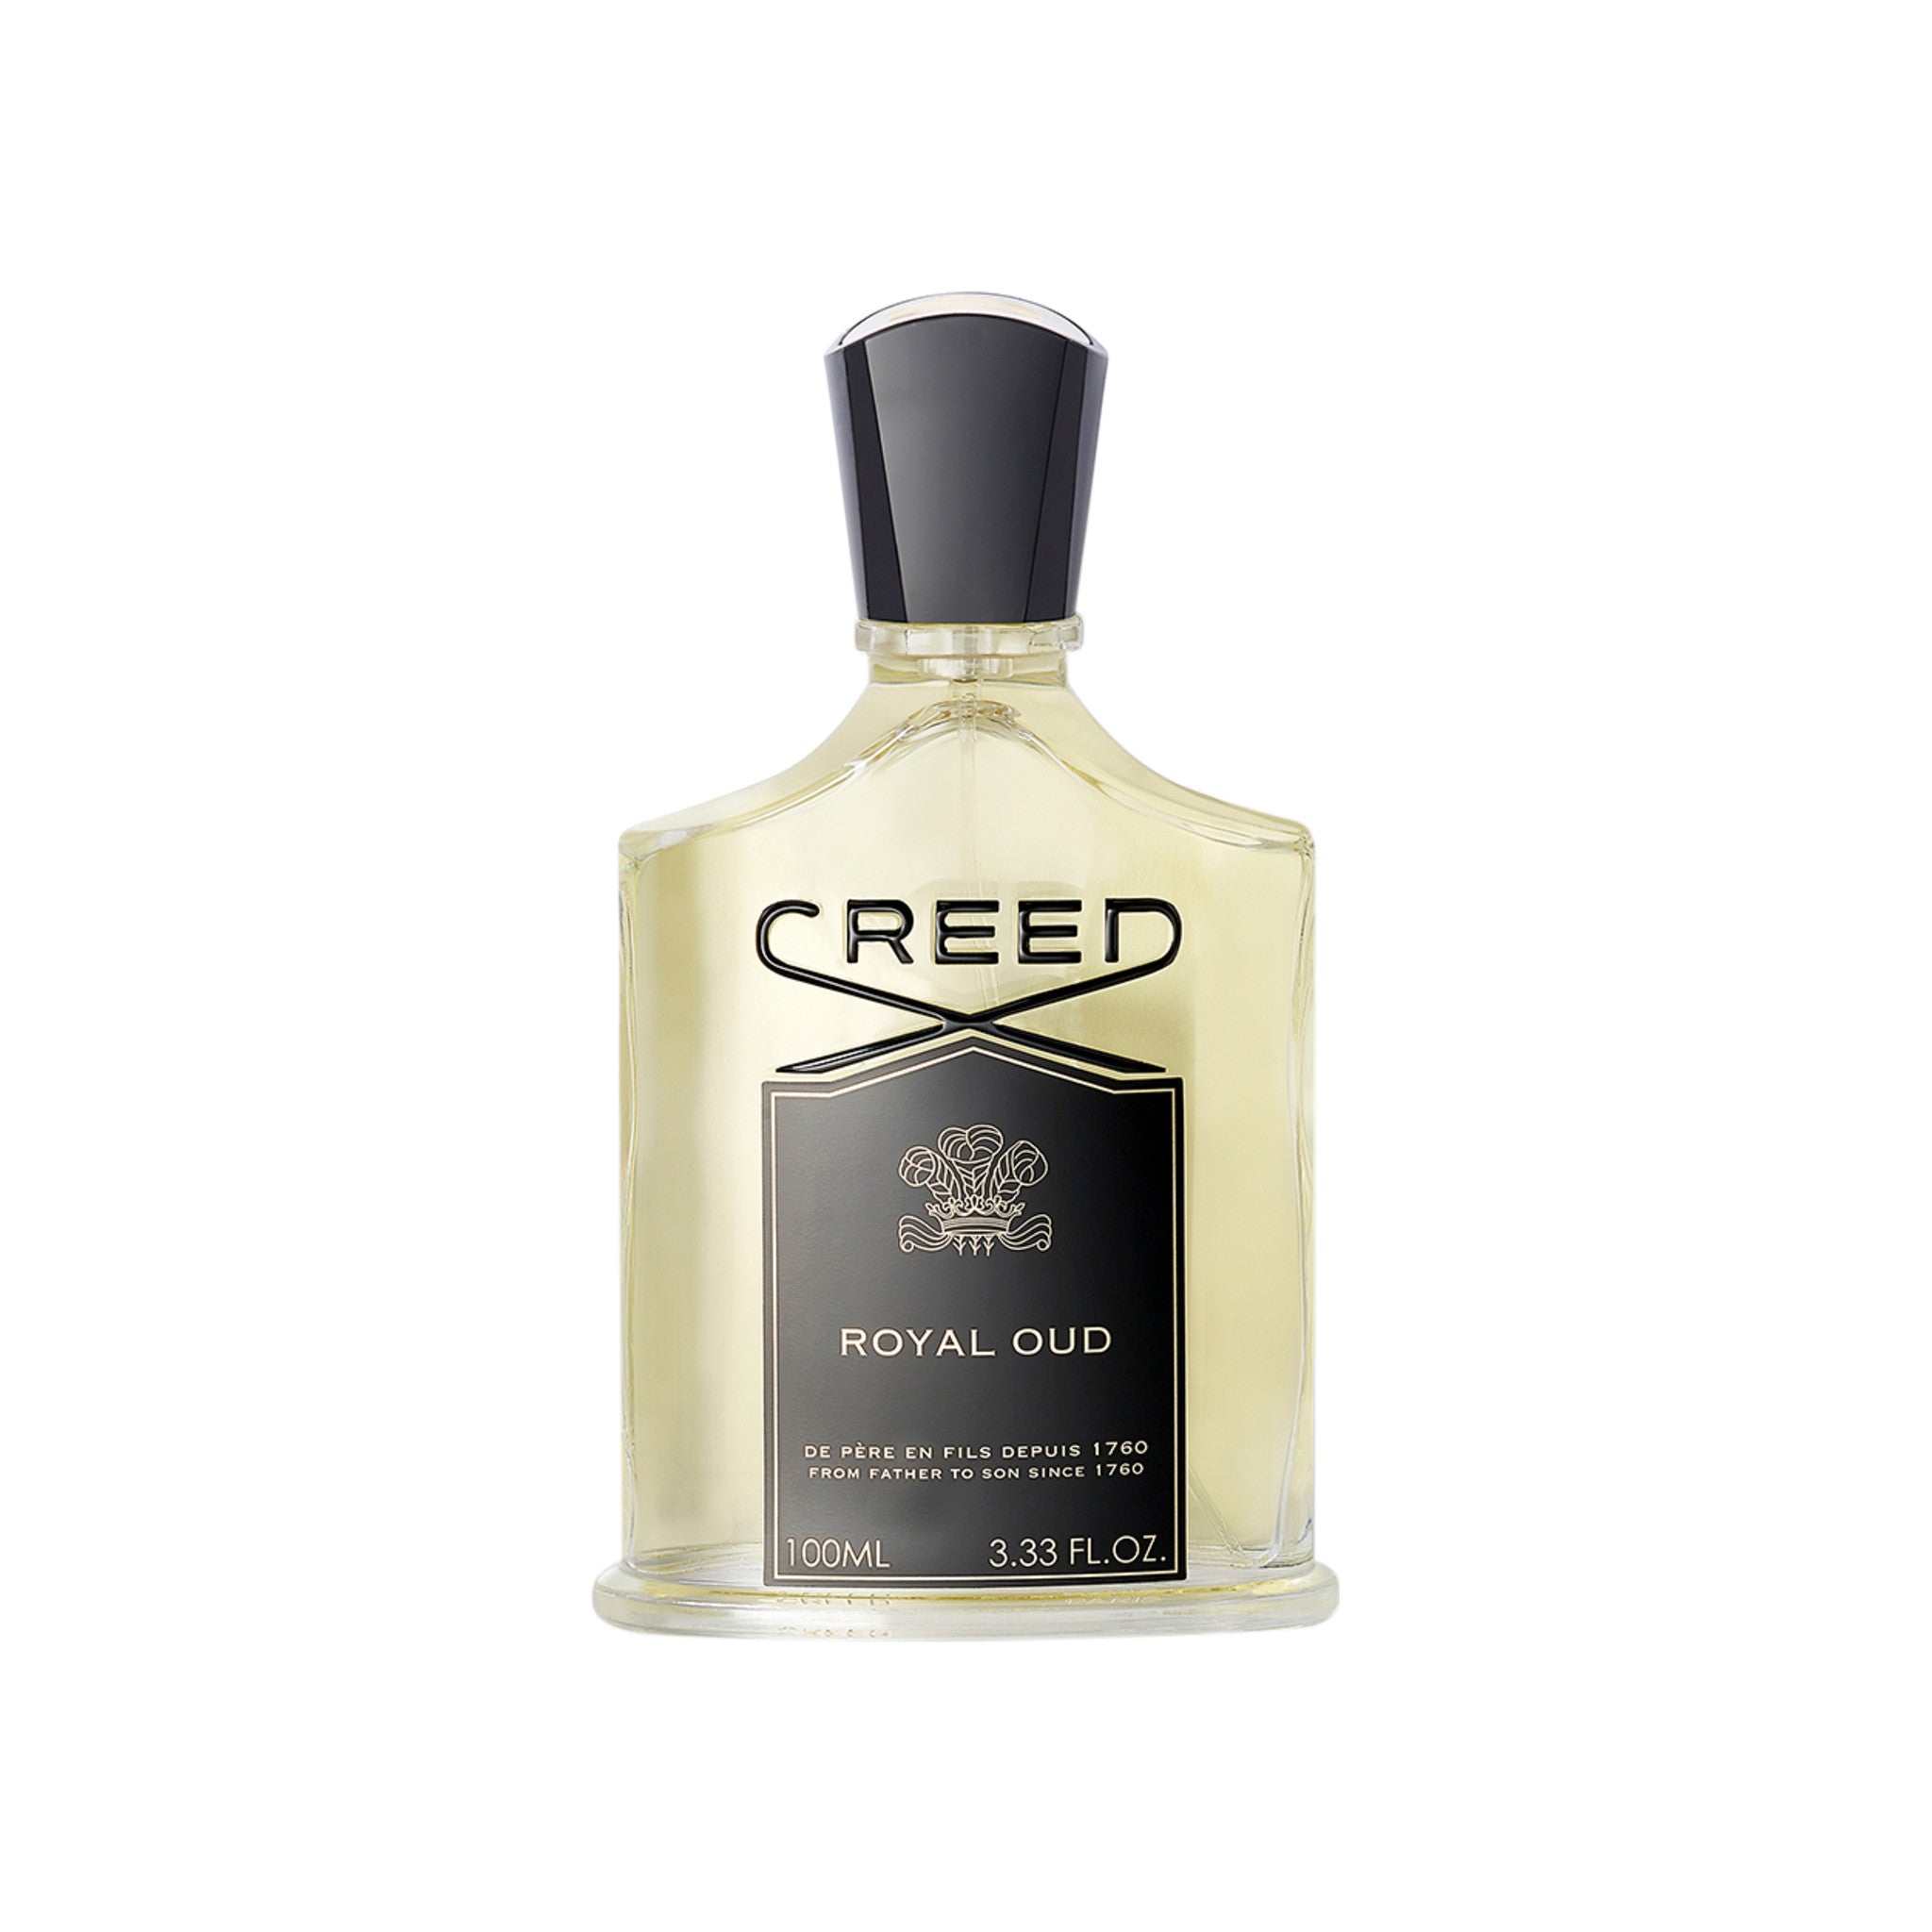 Creed Royal Oud Size variant: 3.38 fl oz main image.